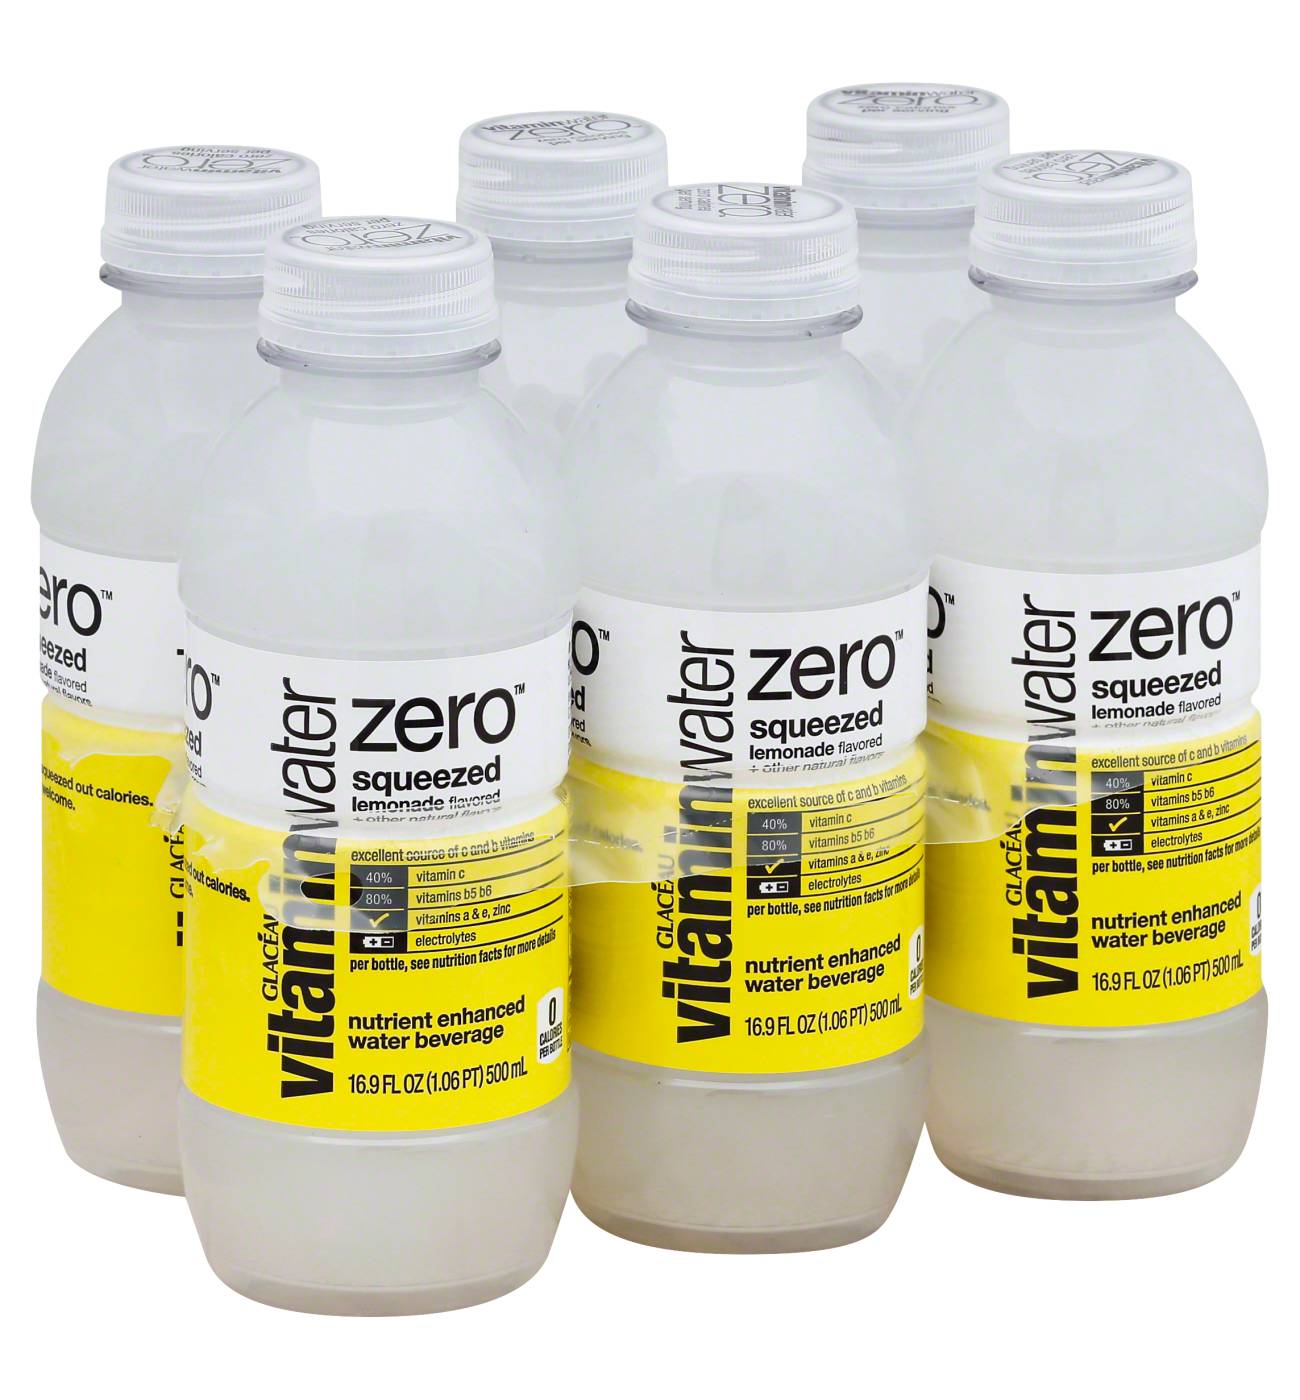 Glaceau Vitaminwater Zero Nutrient Enhanced Squeezed Lemonade Water Beverage 6 PK; image 2 of 2